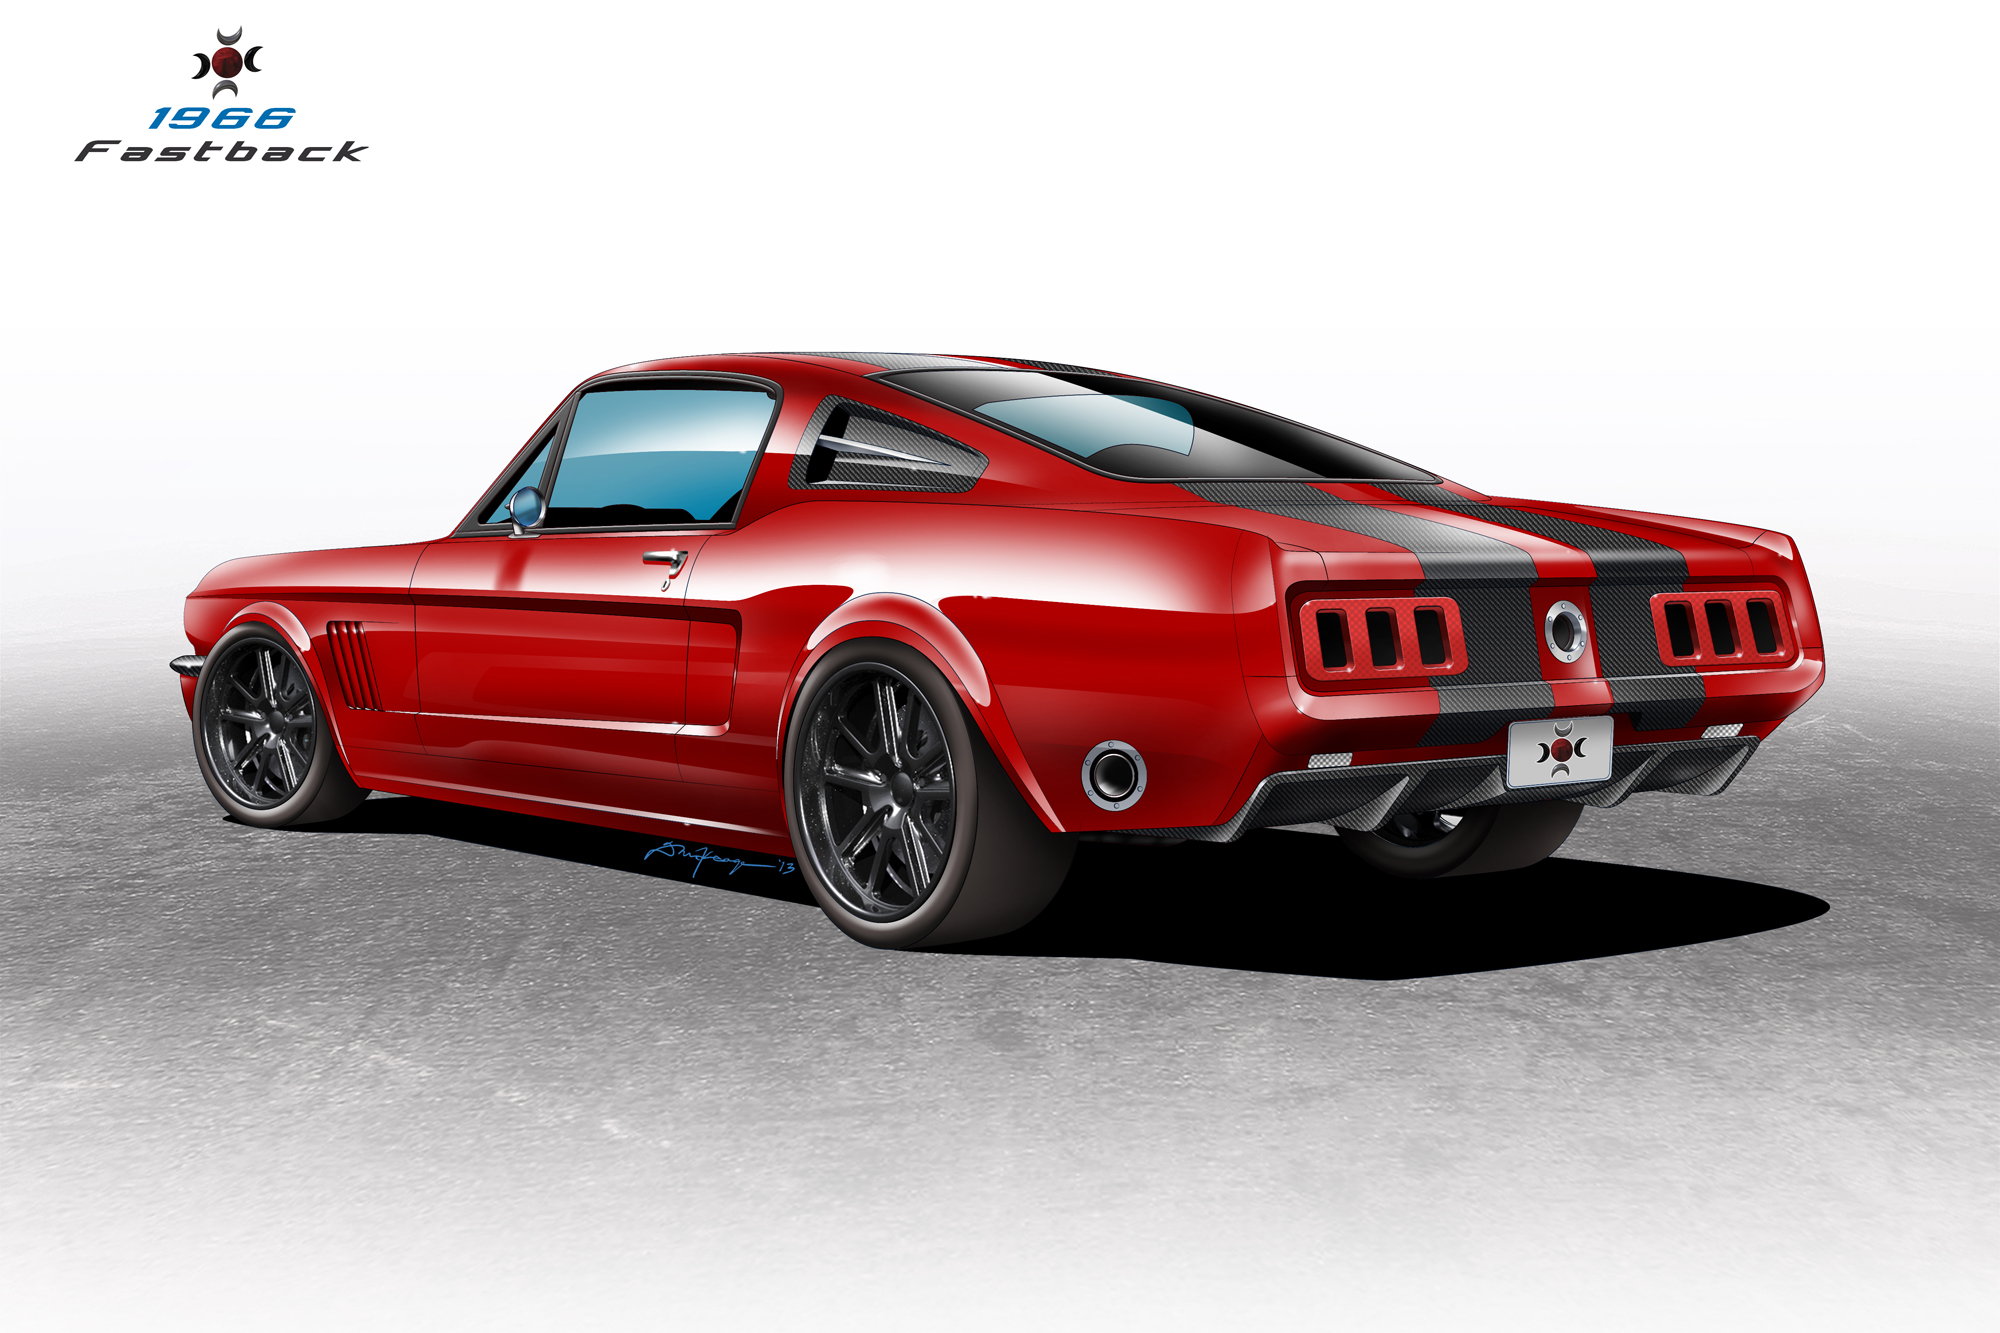 CF-Mustang Keage Concepts Calgary Alberta Automotive Design